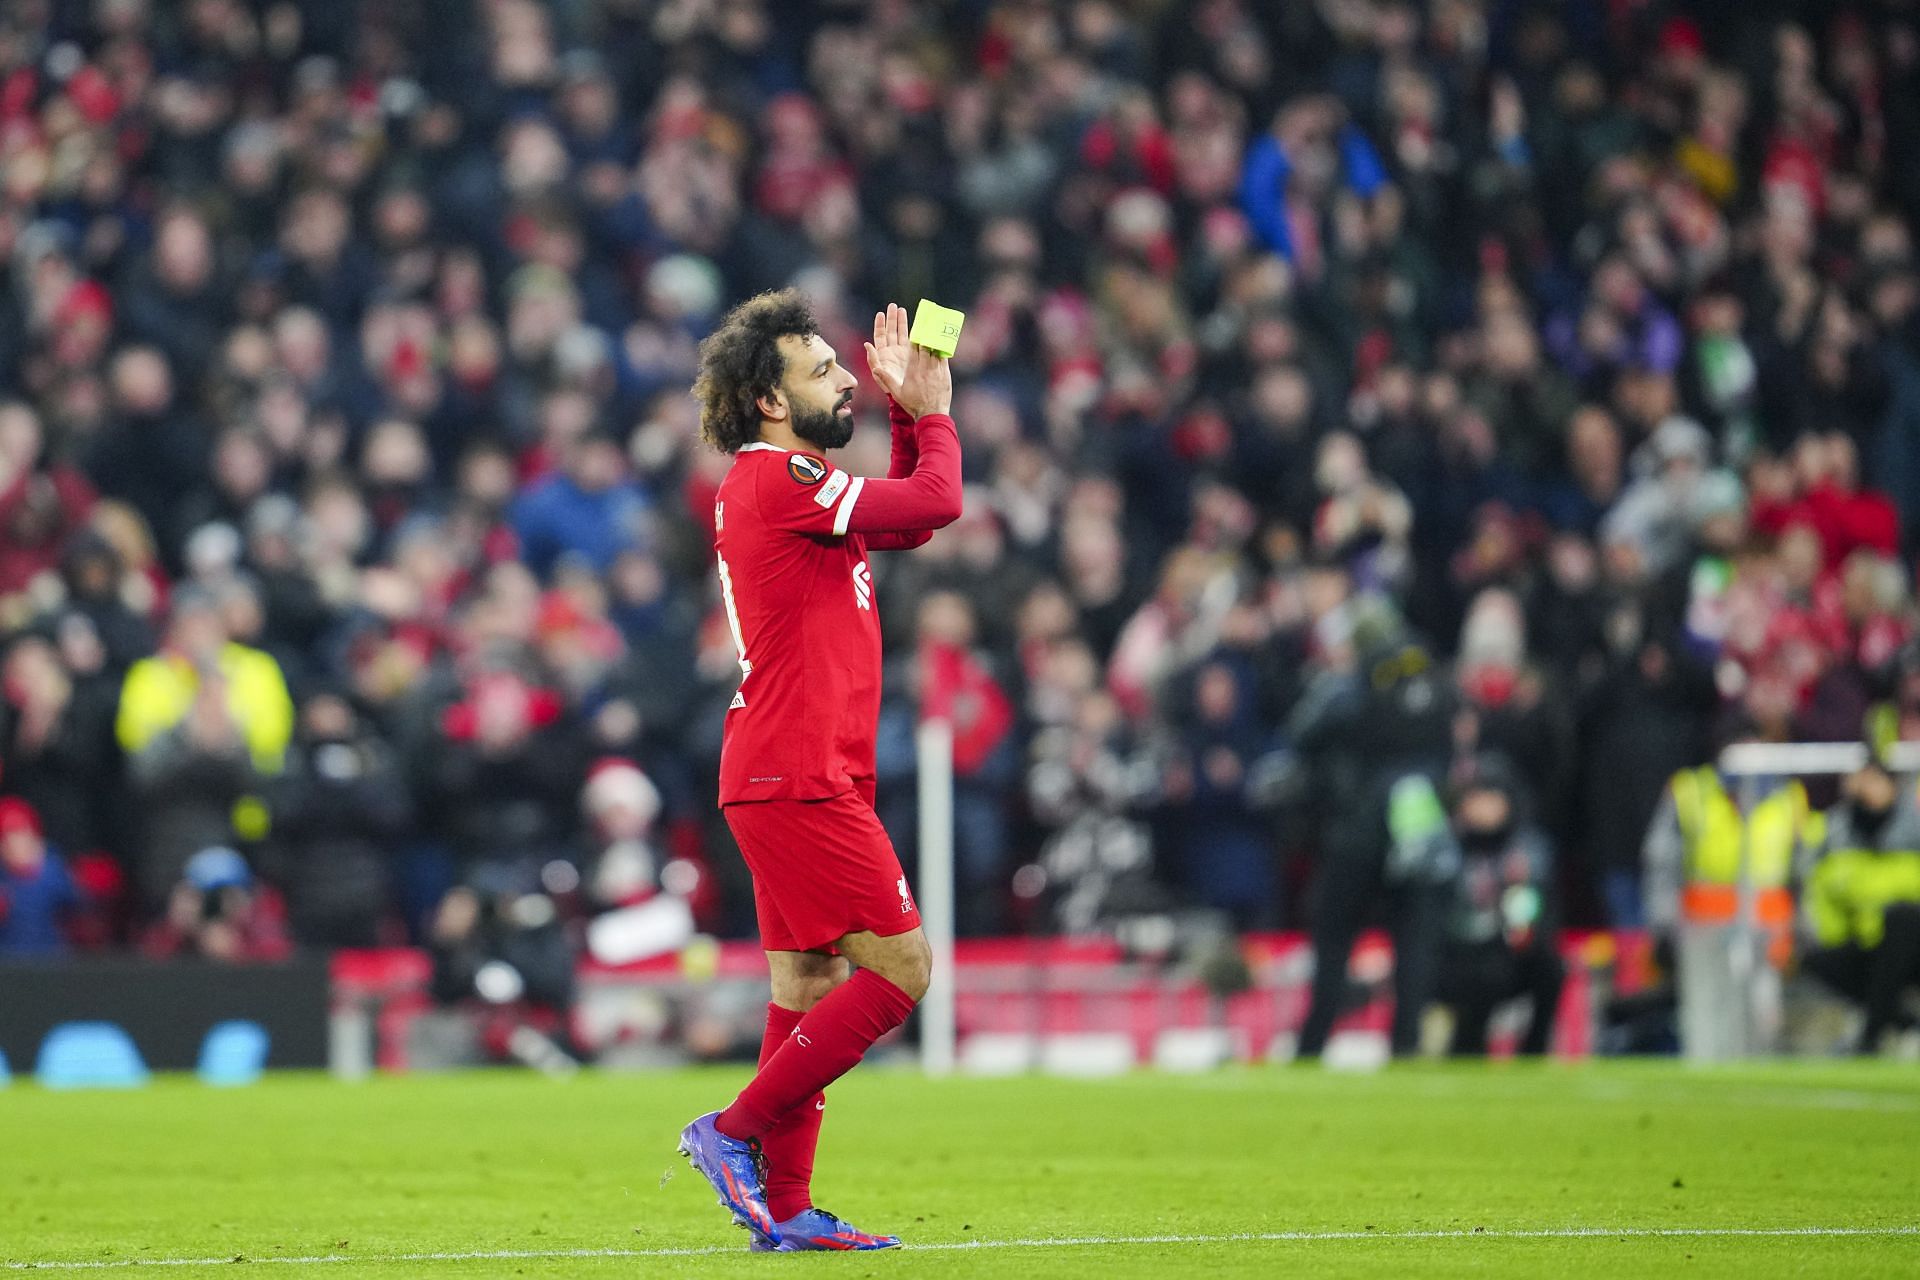 Liverpool attacker Mohamed Salah